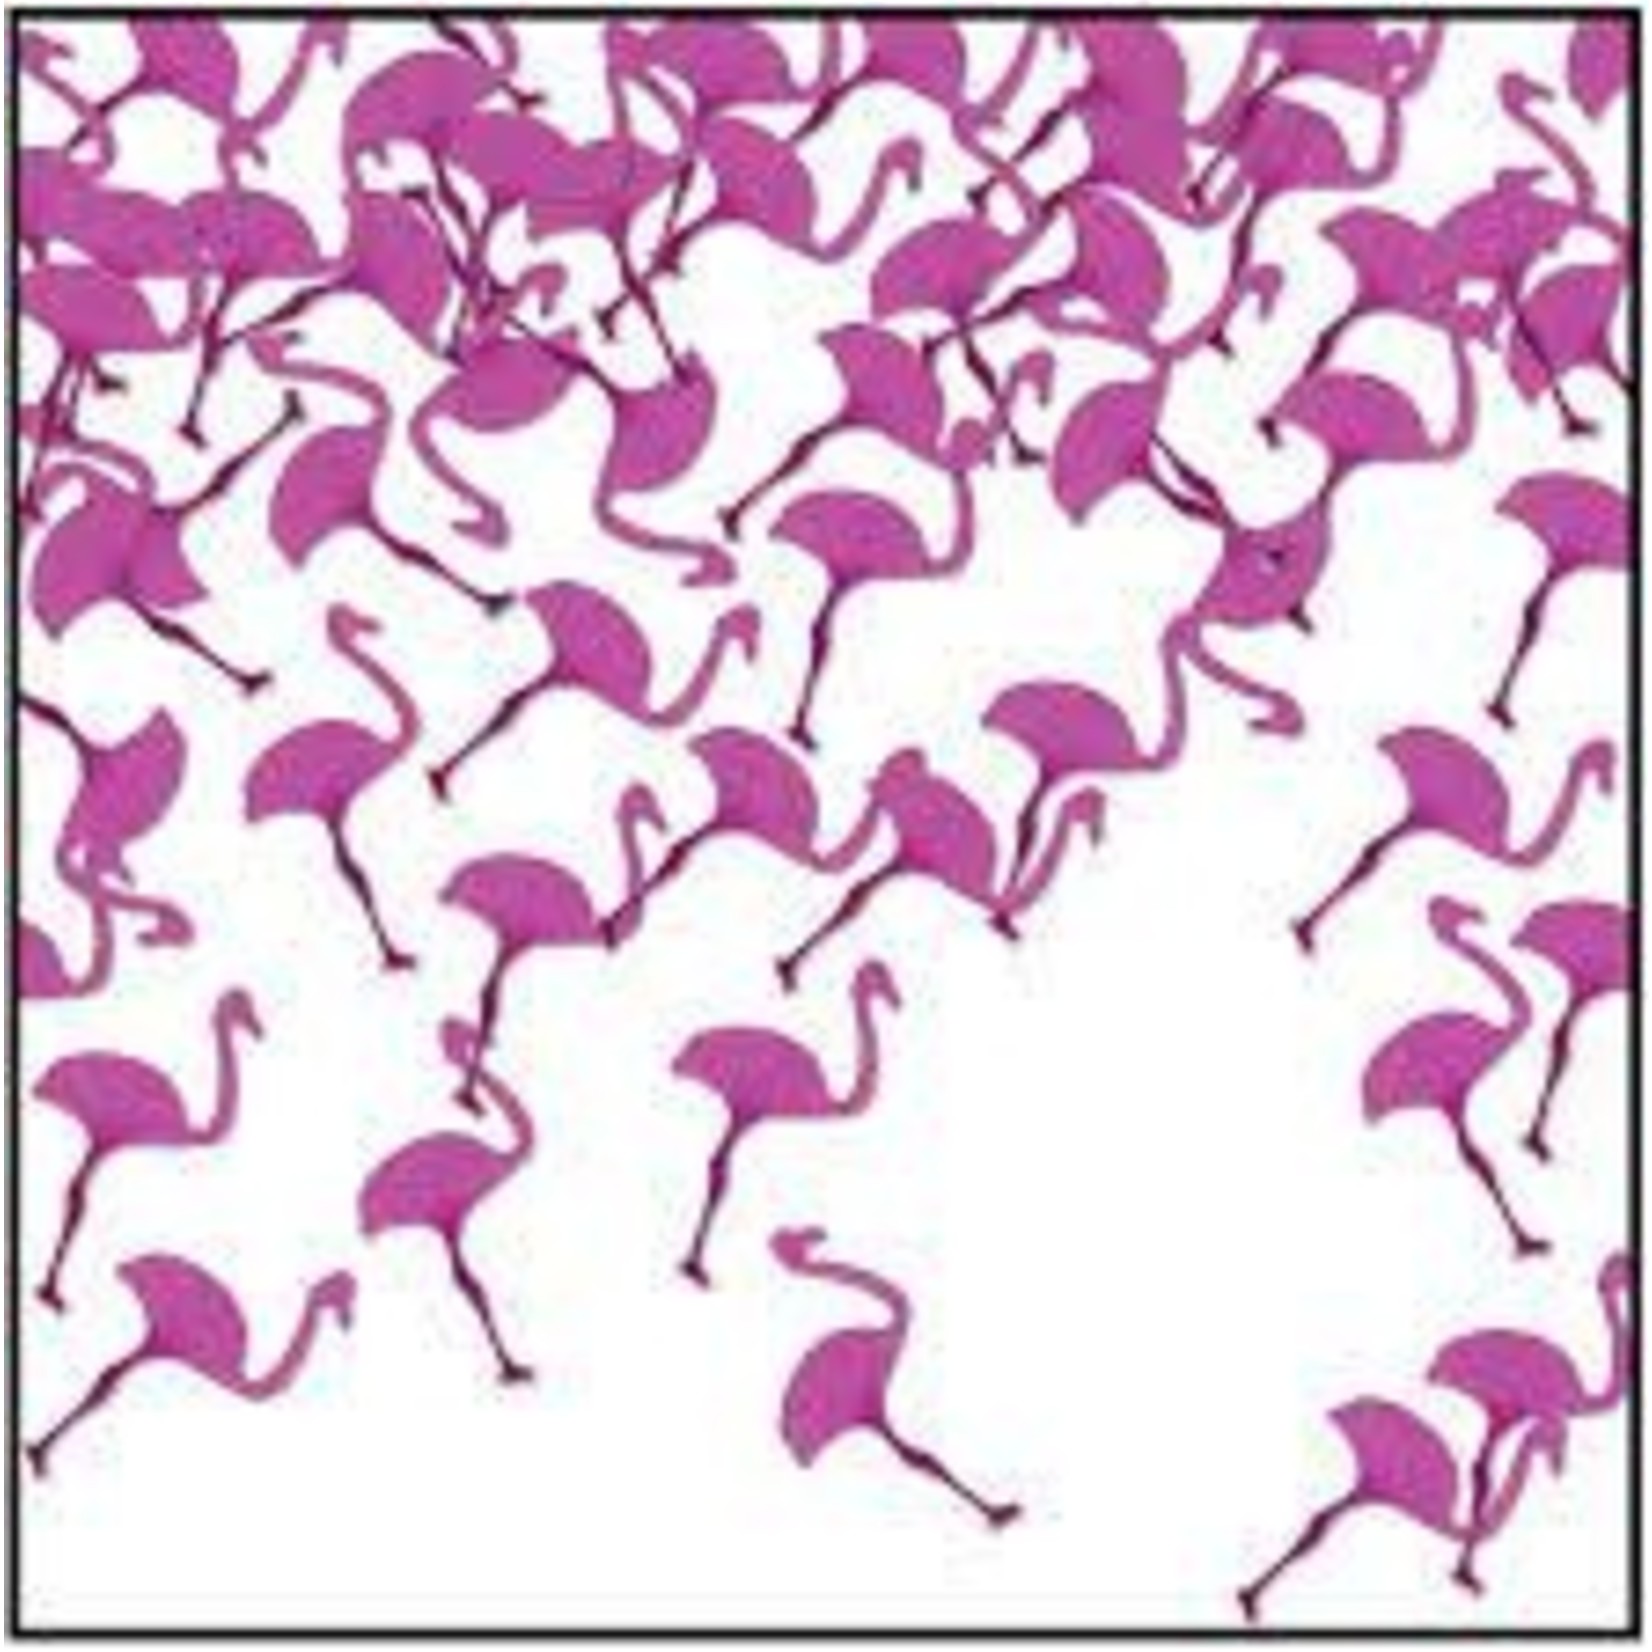 Beistle Flamingo Confetti - 0.5oz.